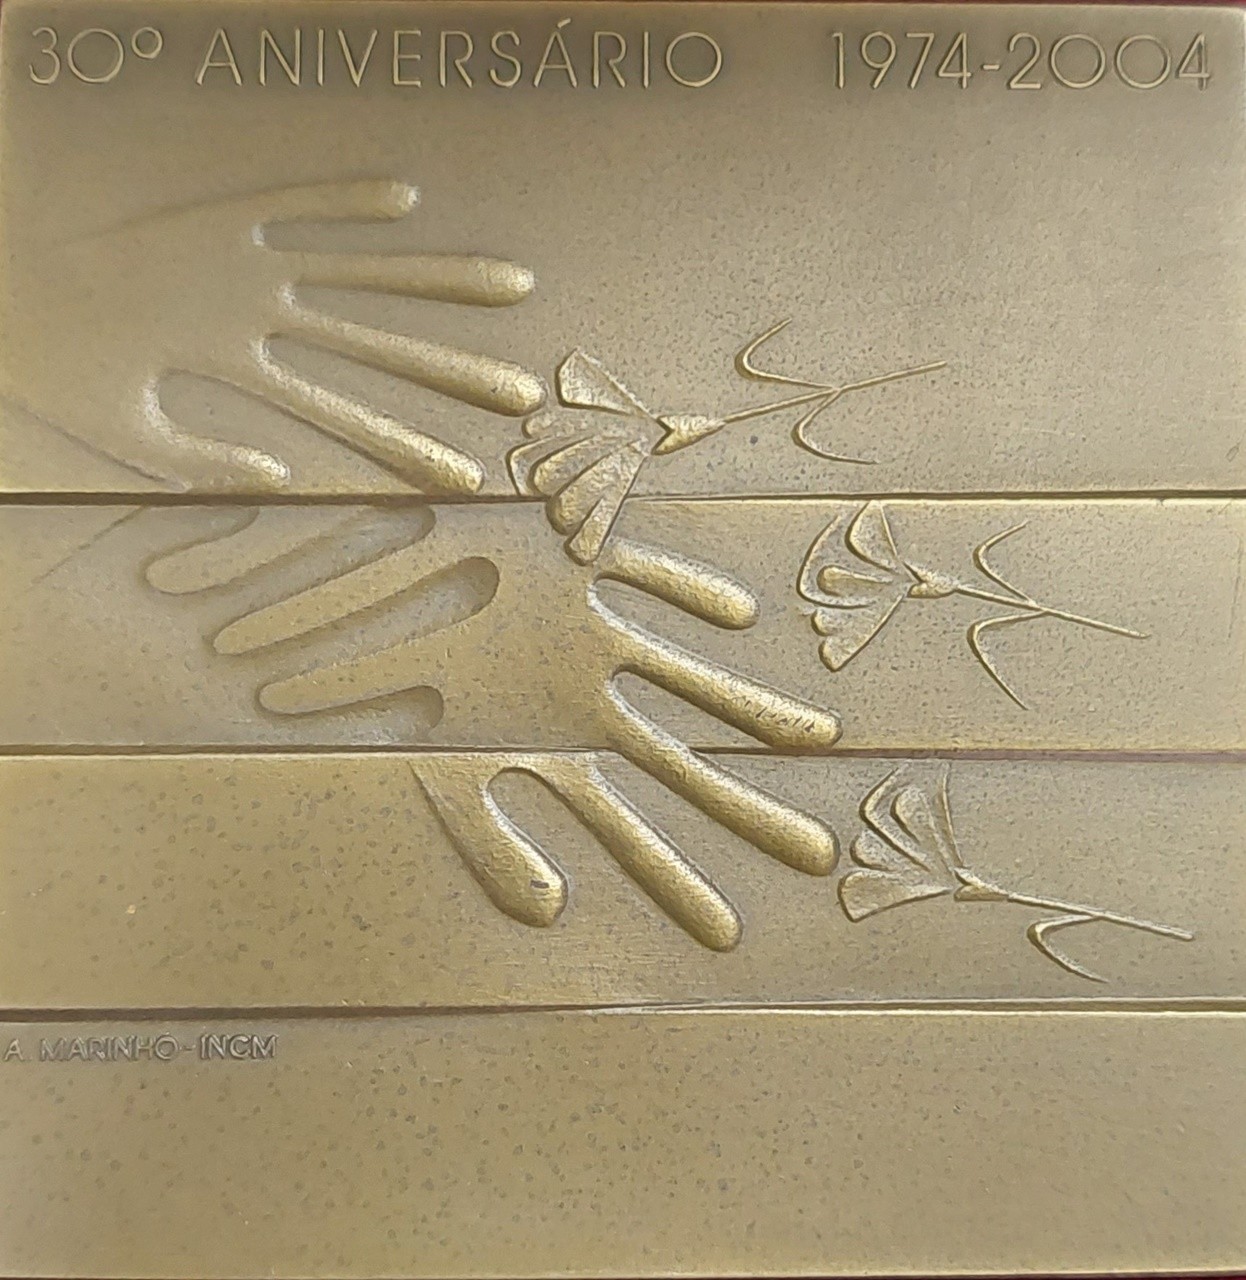 30º ANIVERSÁRIO 1974-2004